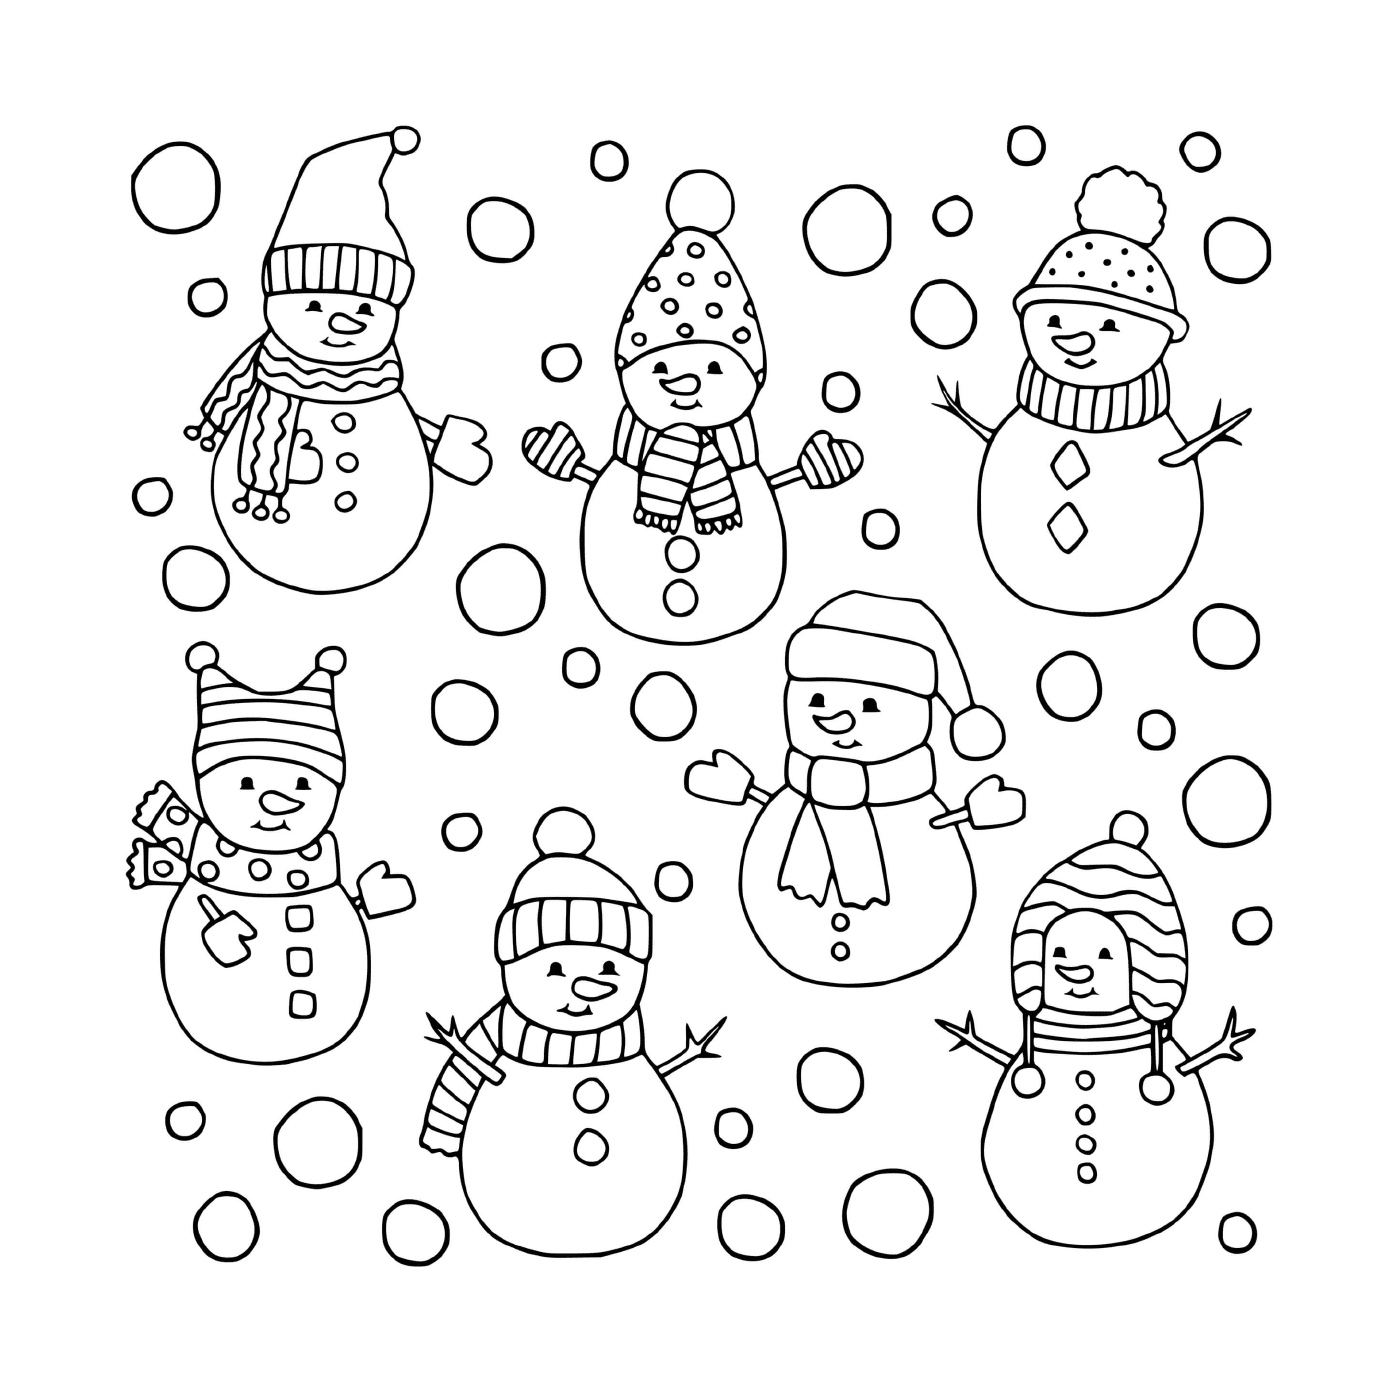  Varios muñecos de nieve diferentes 